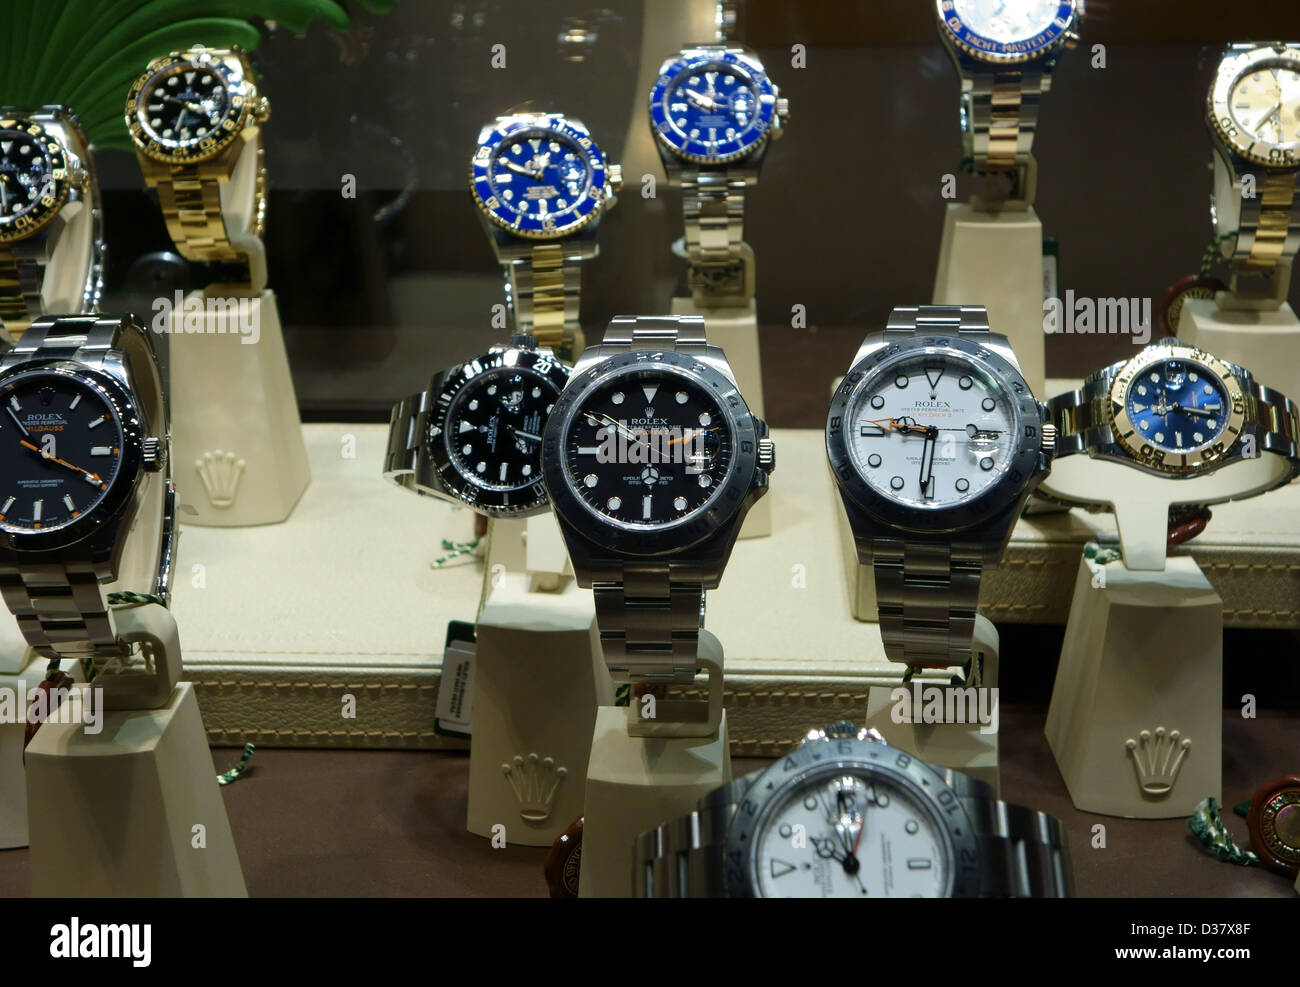 Rolex-Uhren auf dem Display im Schaufenster in Santa Cruz De Tenerife,  Kanarische Inseln Stockfotografie - Alamy